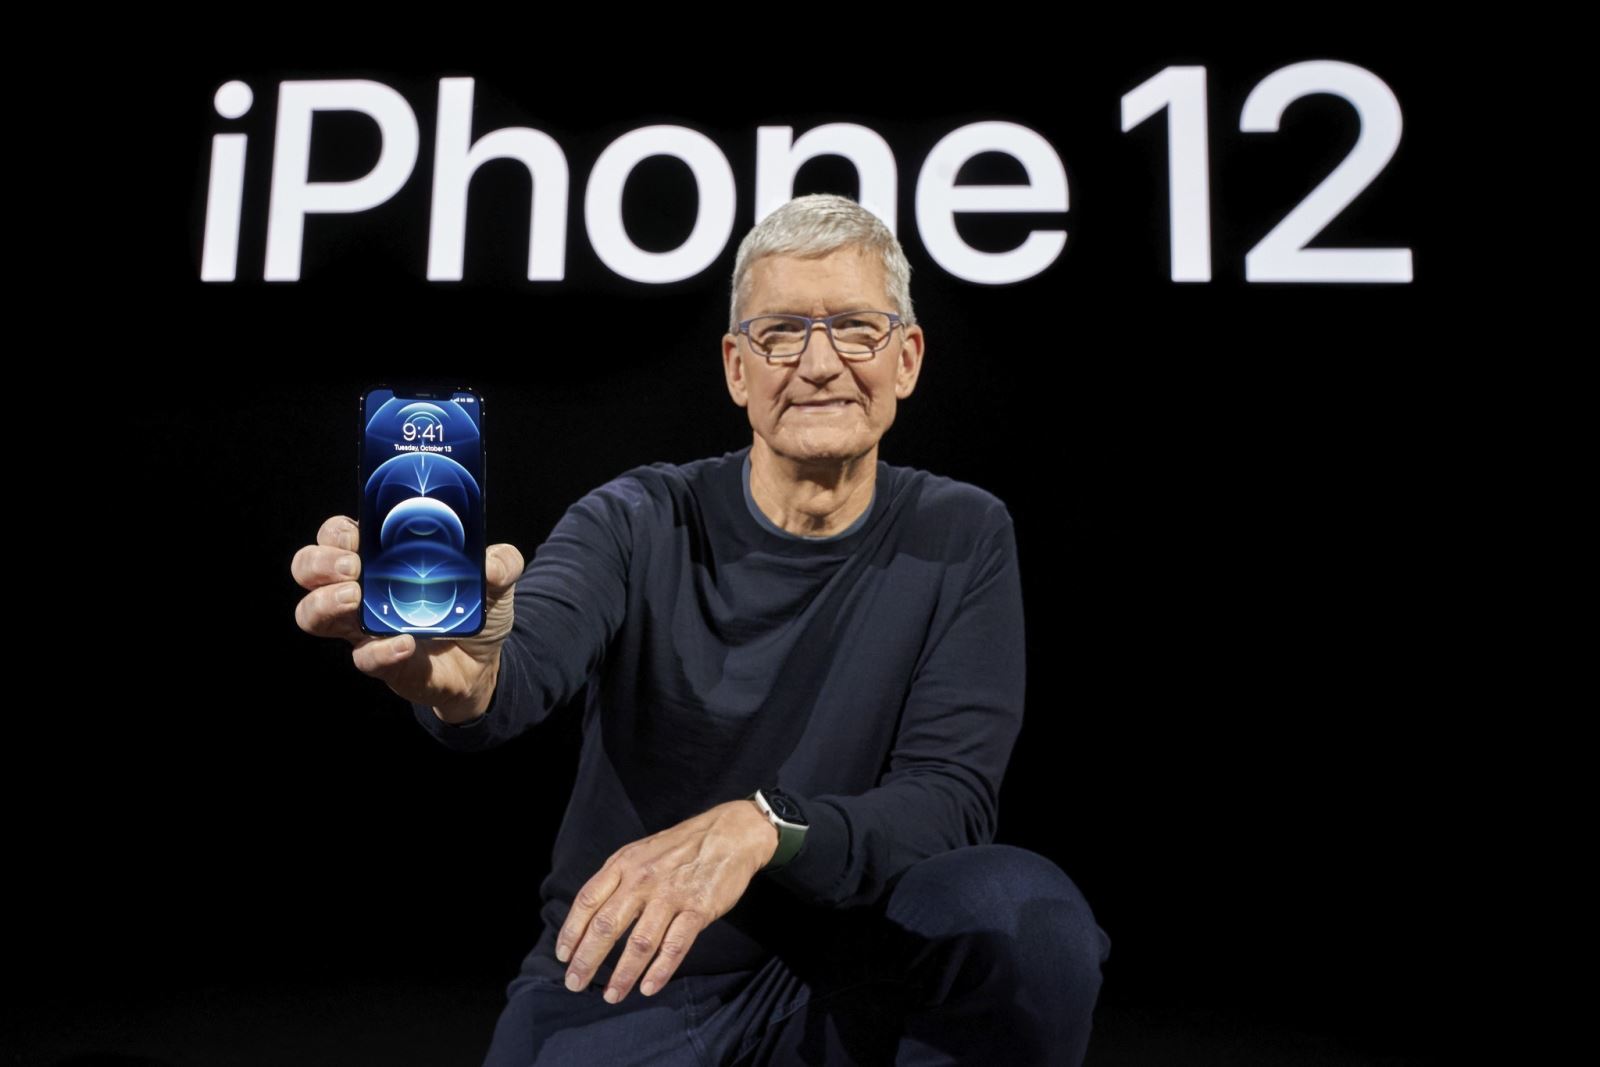 iPhone 13: Sản phẩm iPhone mới nhất của Apple đã được ra mắt với nhiều cải tiến đáng mong đợi, với màn hình Super Retina XDR và hỗ trợ kết nối 5G. Điểm nhấn của thiết bị là hệ thống camera được nâng cấp với chế độ chụp đêm LiDAR và khả năng zoom quang học 2x. Cùng khám phá những tính năng ấn tượng của iPhone 13 qua hình ảnh chi tiết.